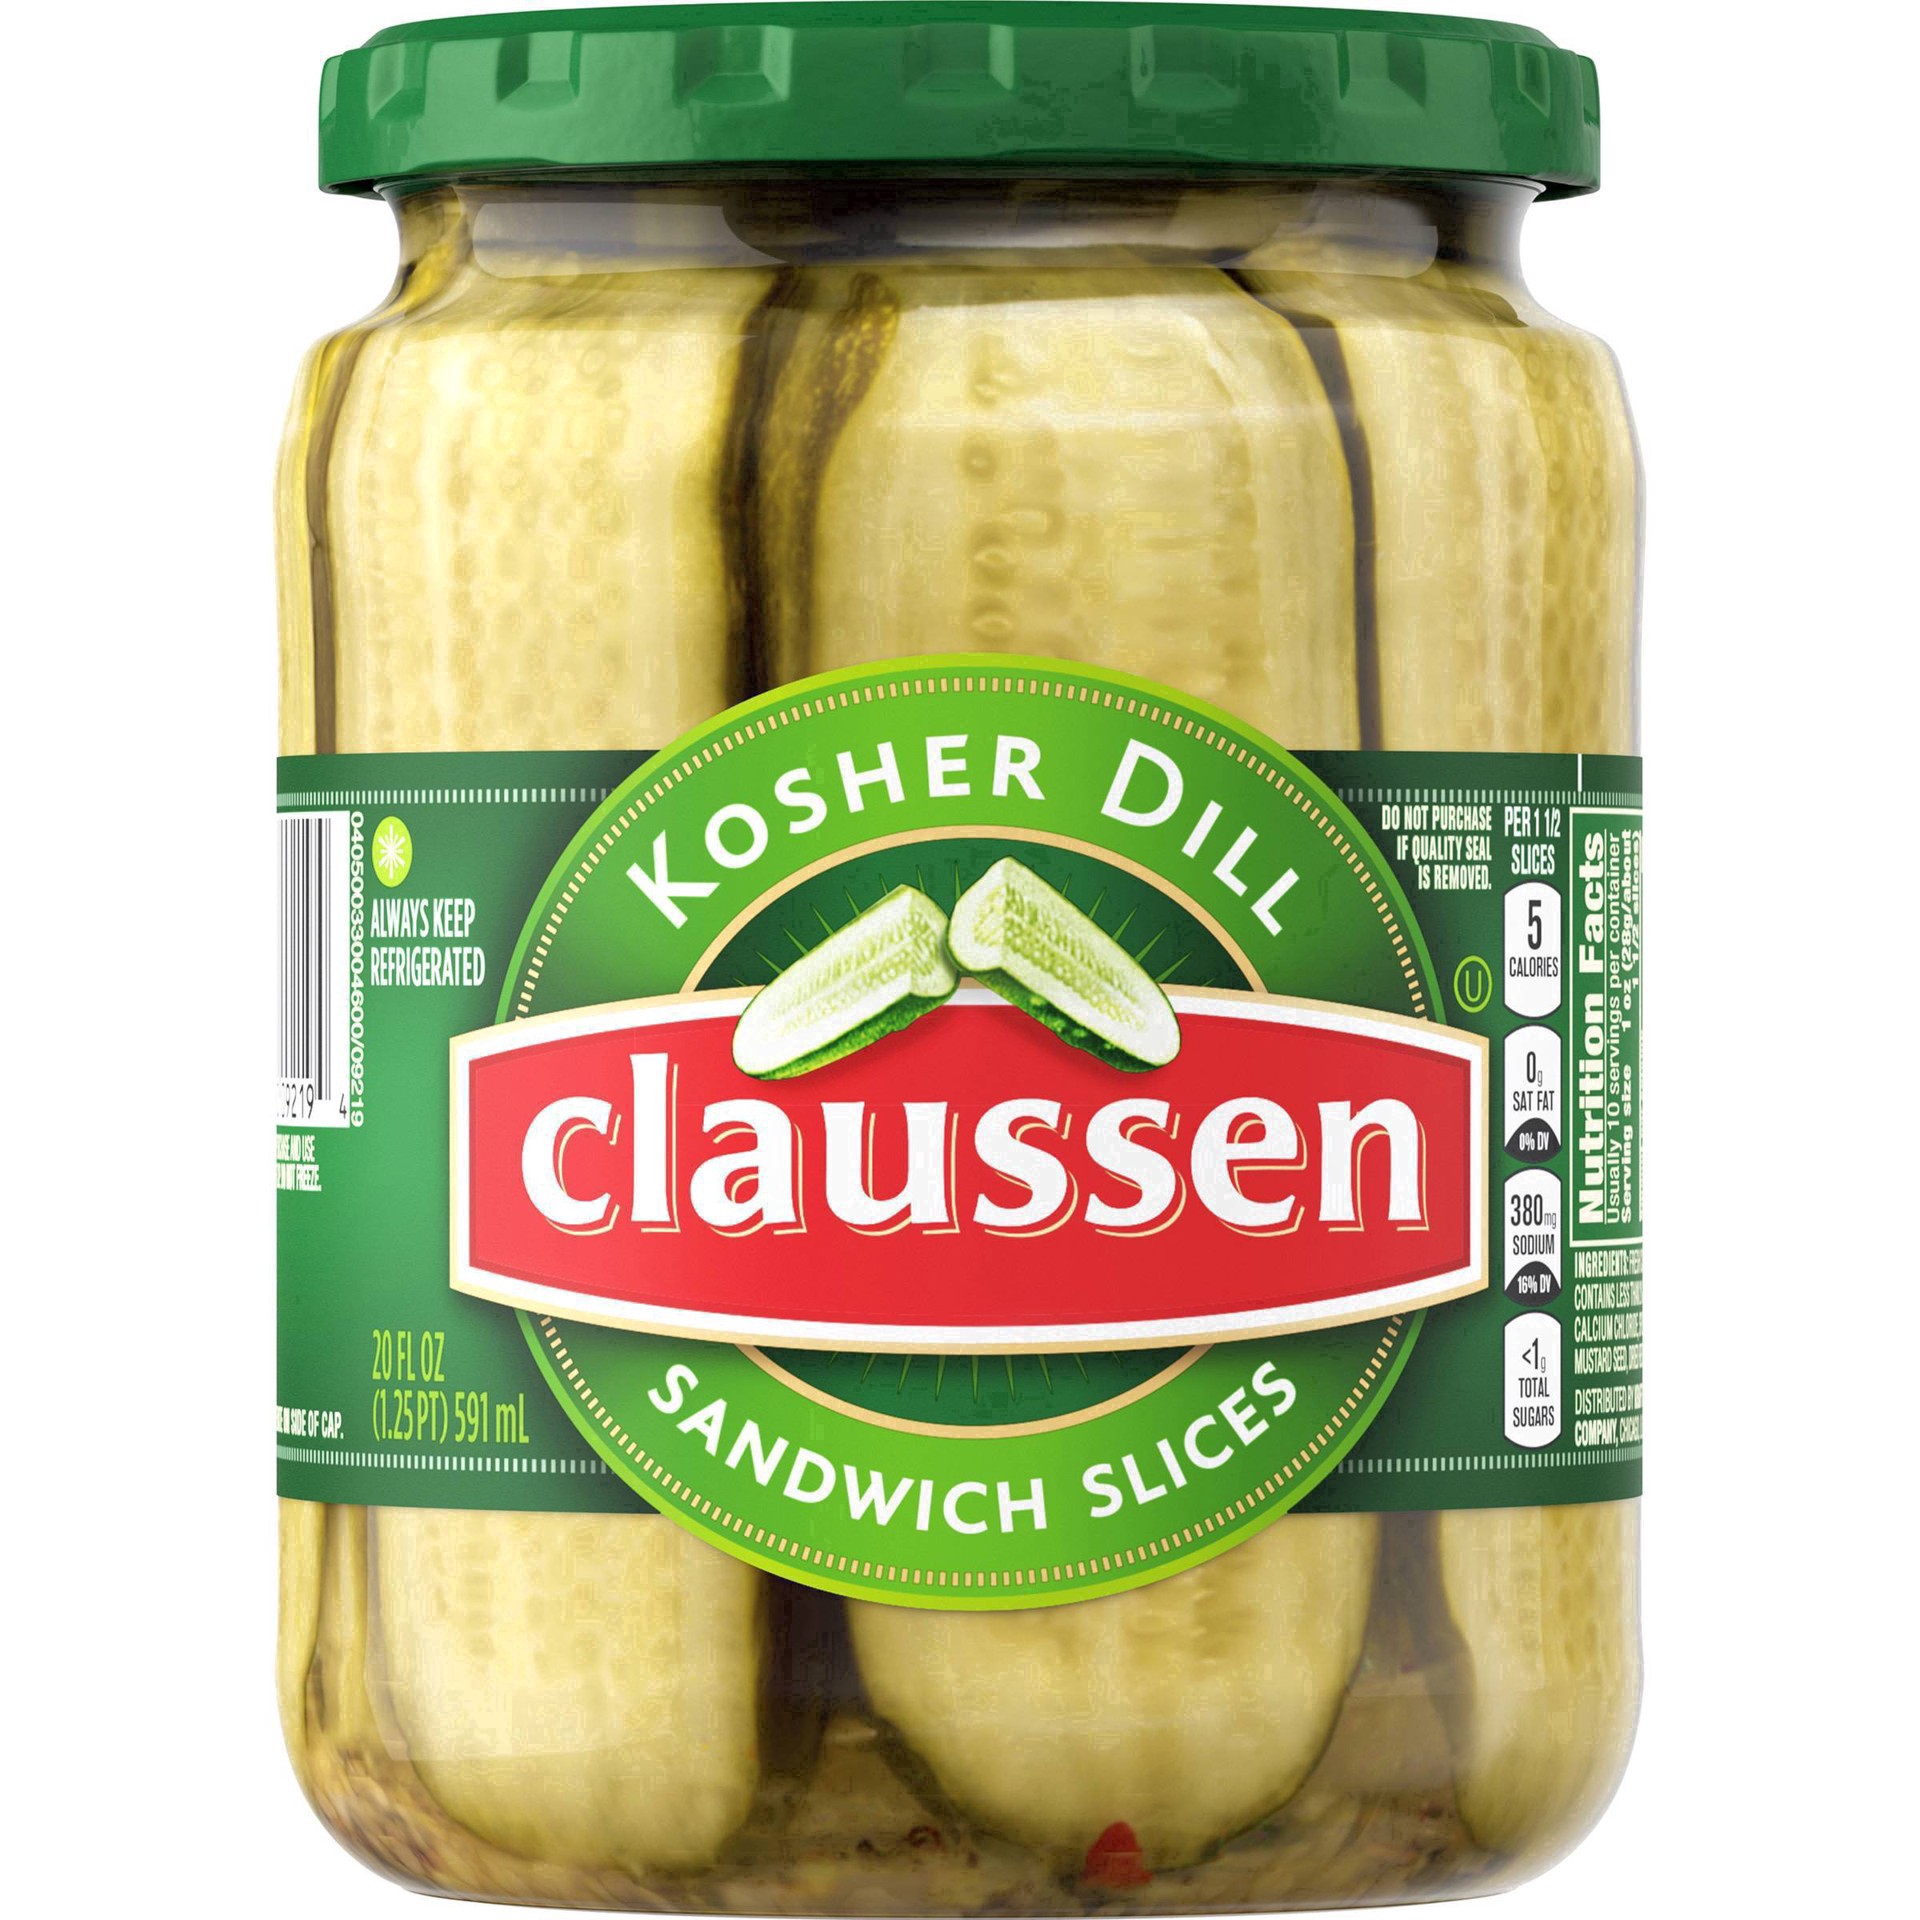 slide 79 of 144, Claussen Kosher Dill Pickle Sandwich Slices, 20 fl. oz. Jar, 20 fl oz